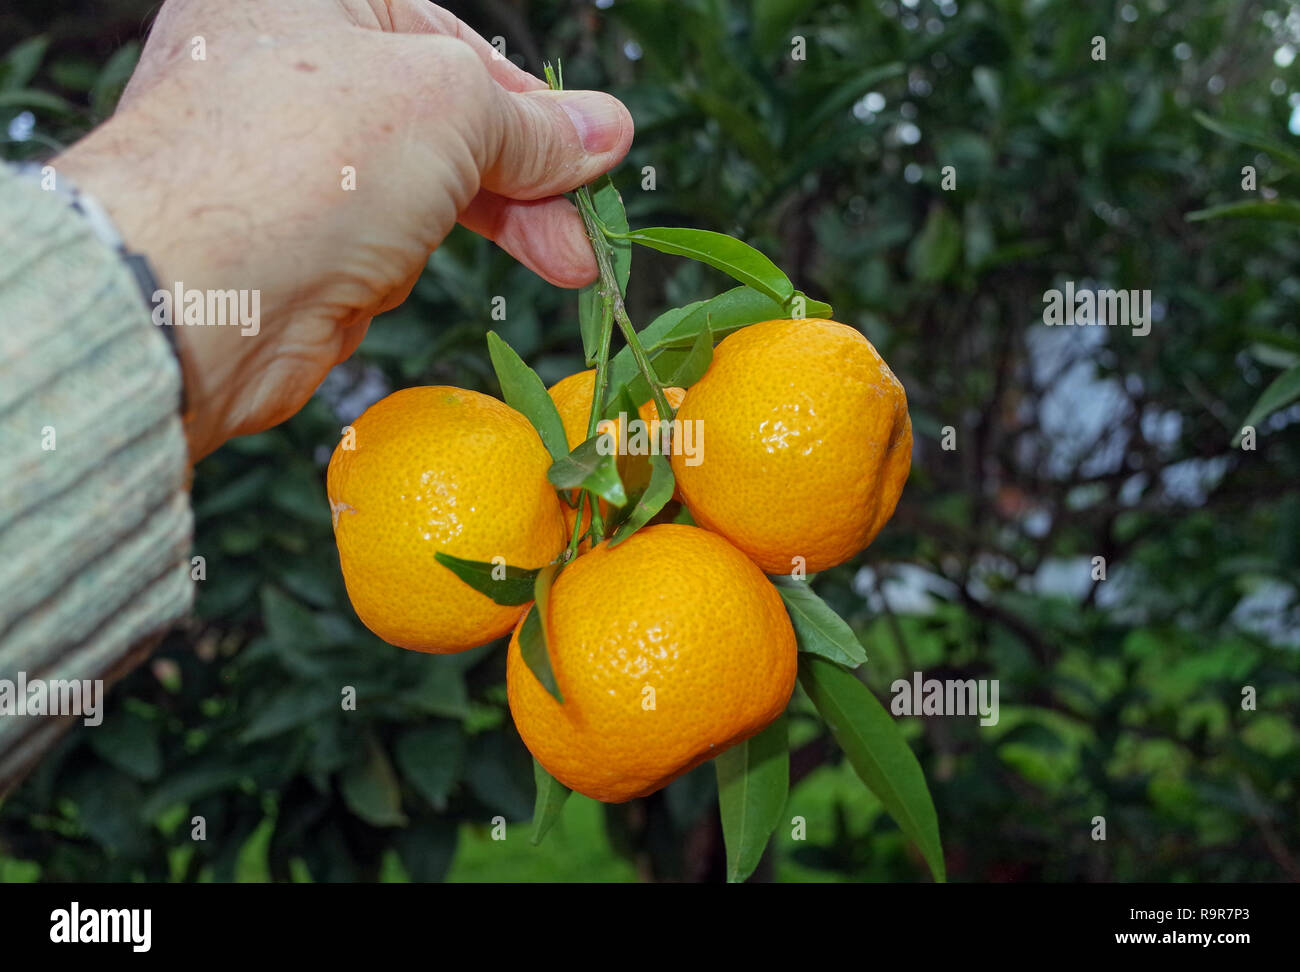 Tangerine (citrus nobilis) close-up Stock Photo